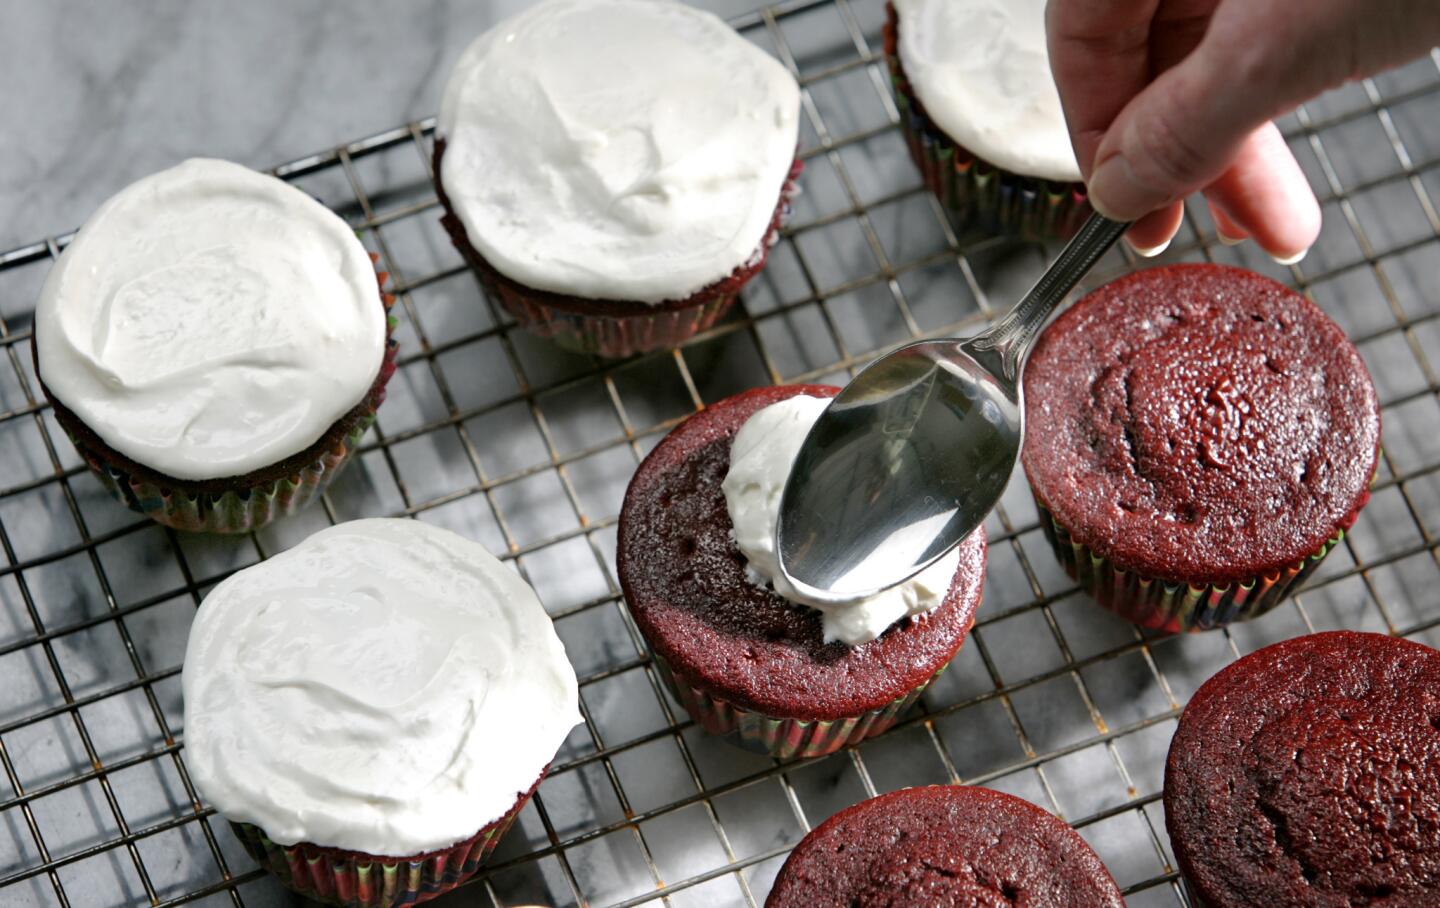 Red velvet insanity cupcakes